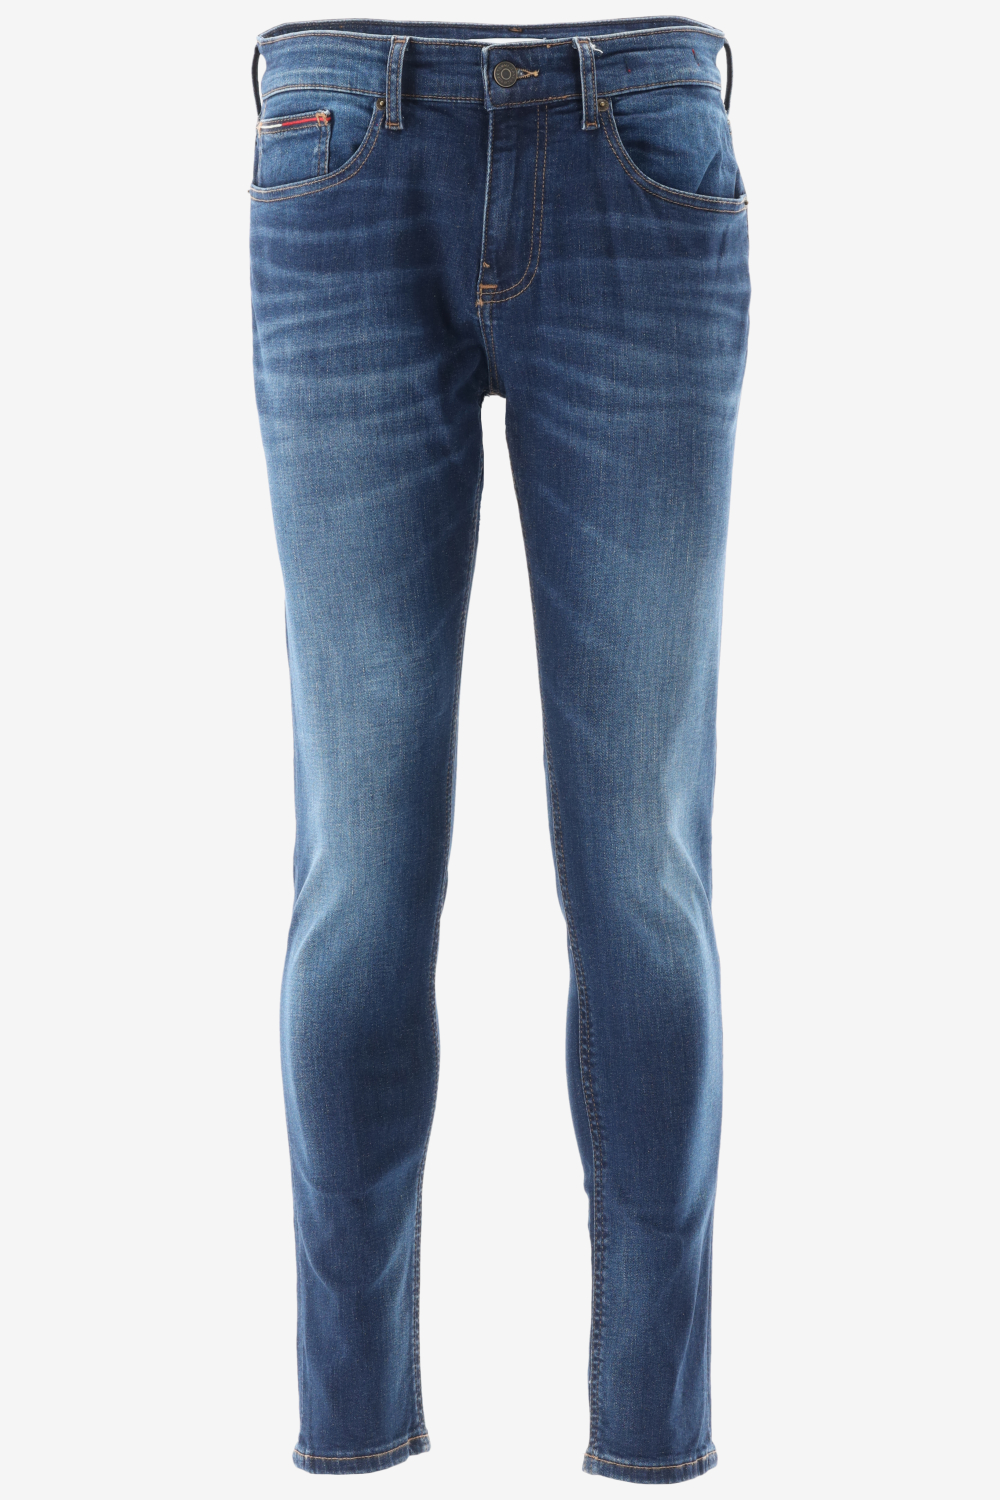 getrouwd Meerdere Afstoting Heren jeans koop je online bij Bergmans Outlet! Alle bekende merken altijd  tot 60% goedkoper! Shop nu online! - Herenkleding Jeans - Bergmans Fashion  Outlet - Webshop | GRATIS VERZENDING!